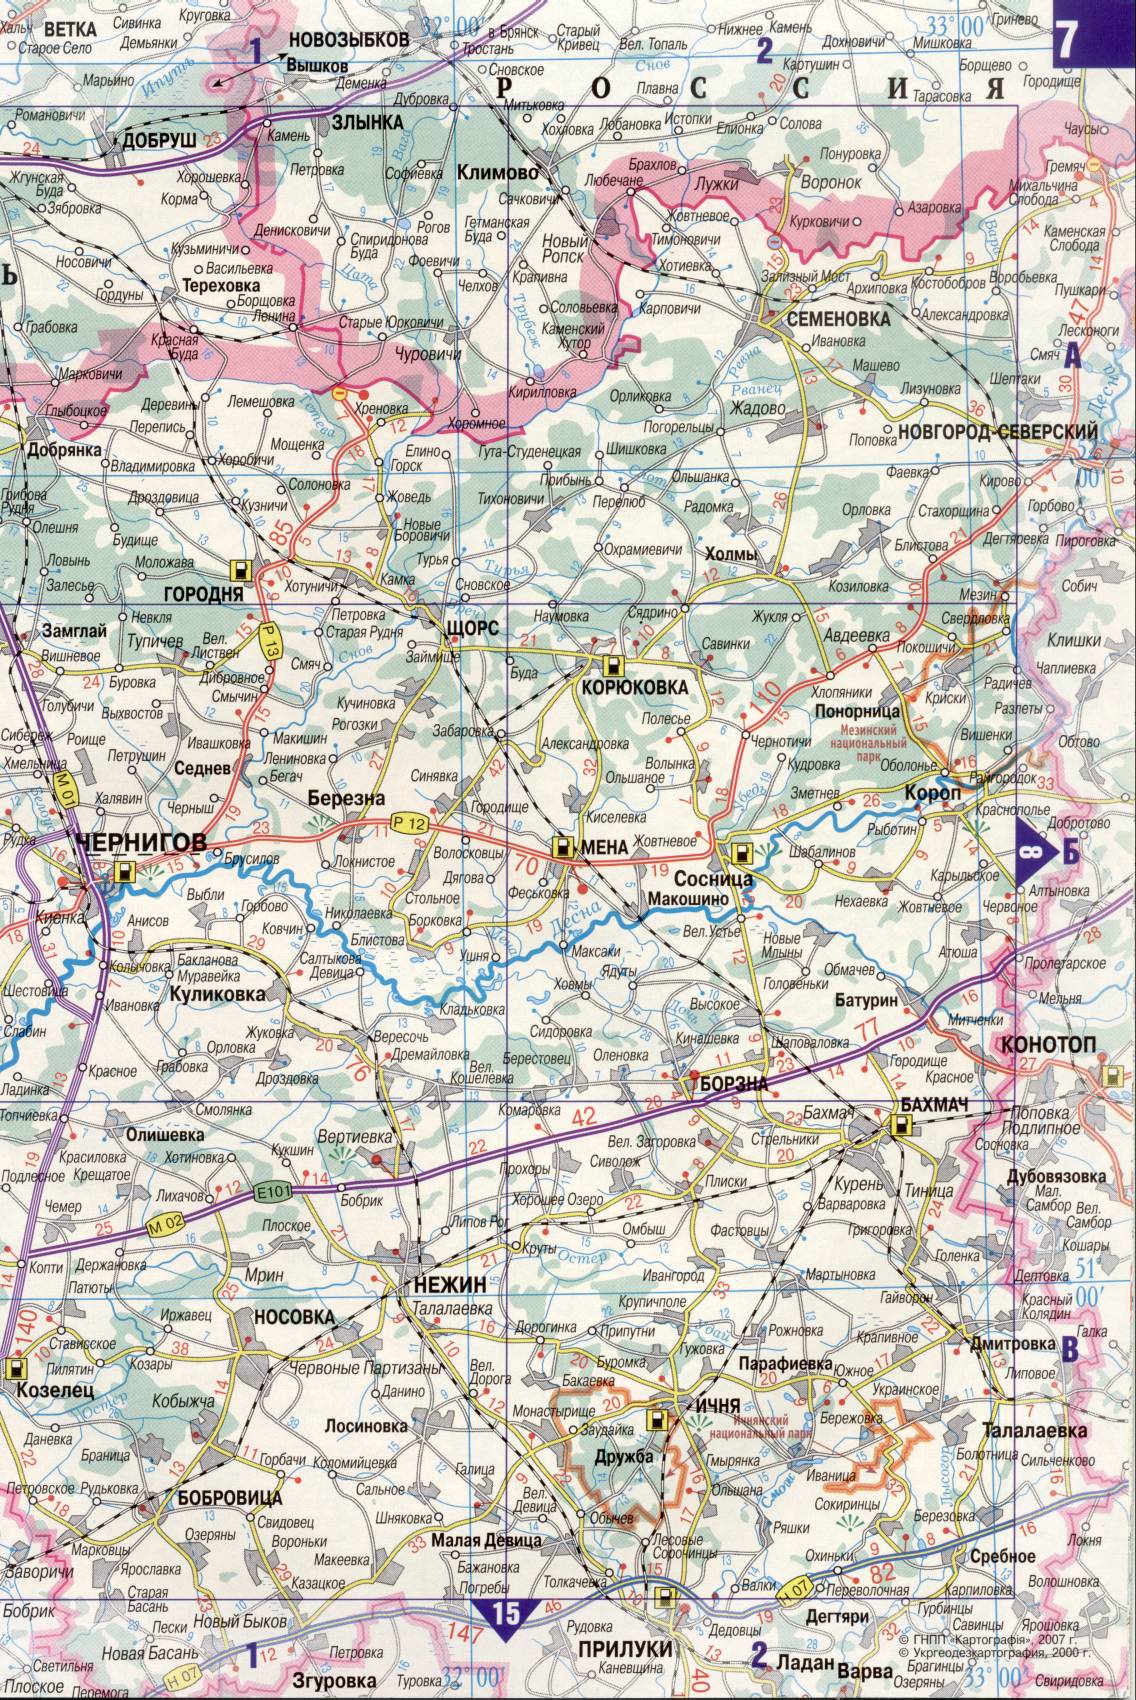 Karte der Ukraine. Detaillierte Straßenkarte der Ukraine avtomobilnog Satin. kostenlos herunterladen, F0